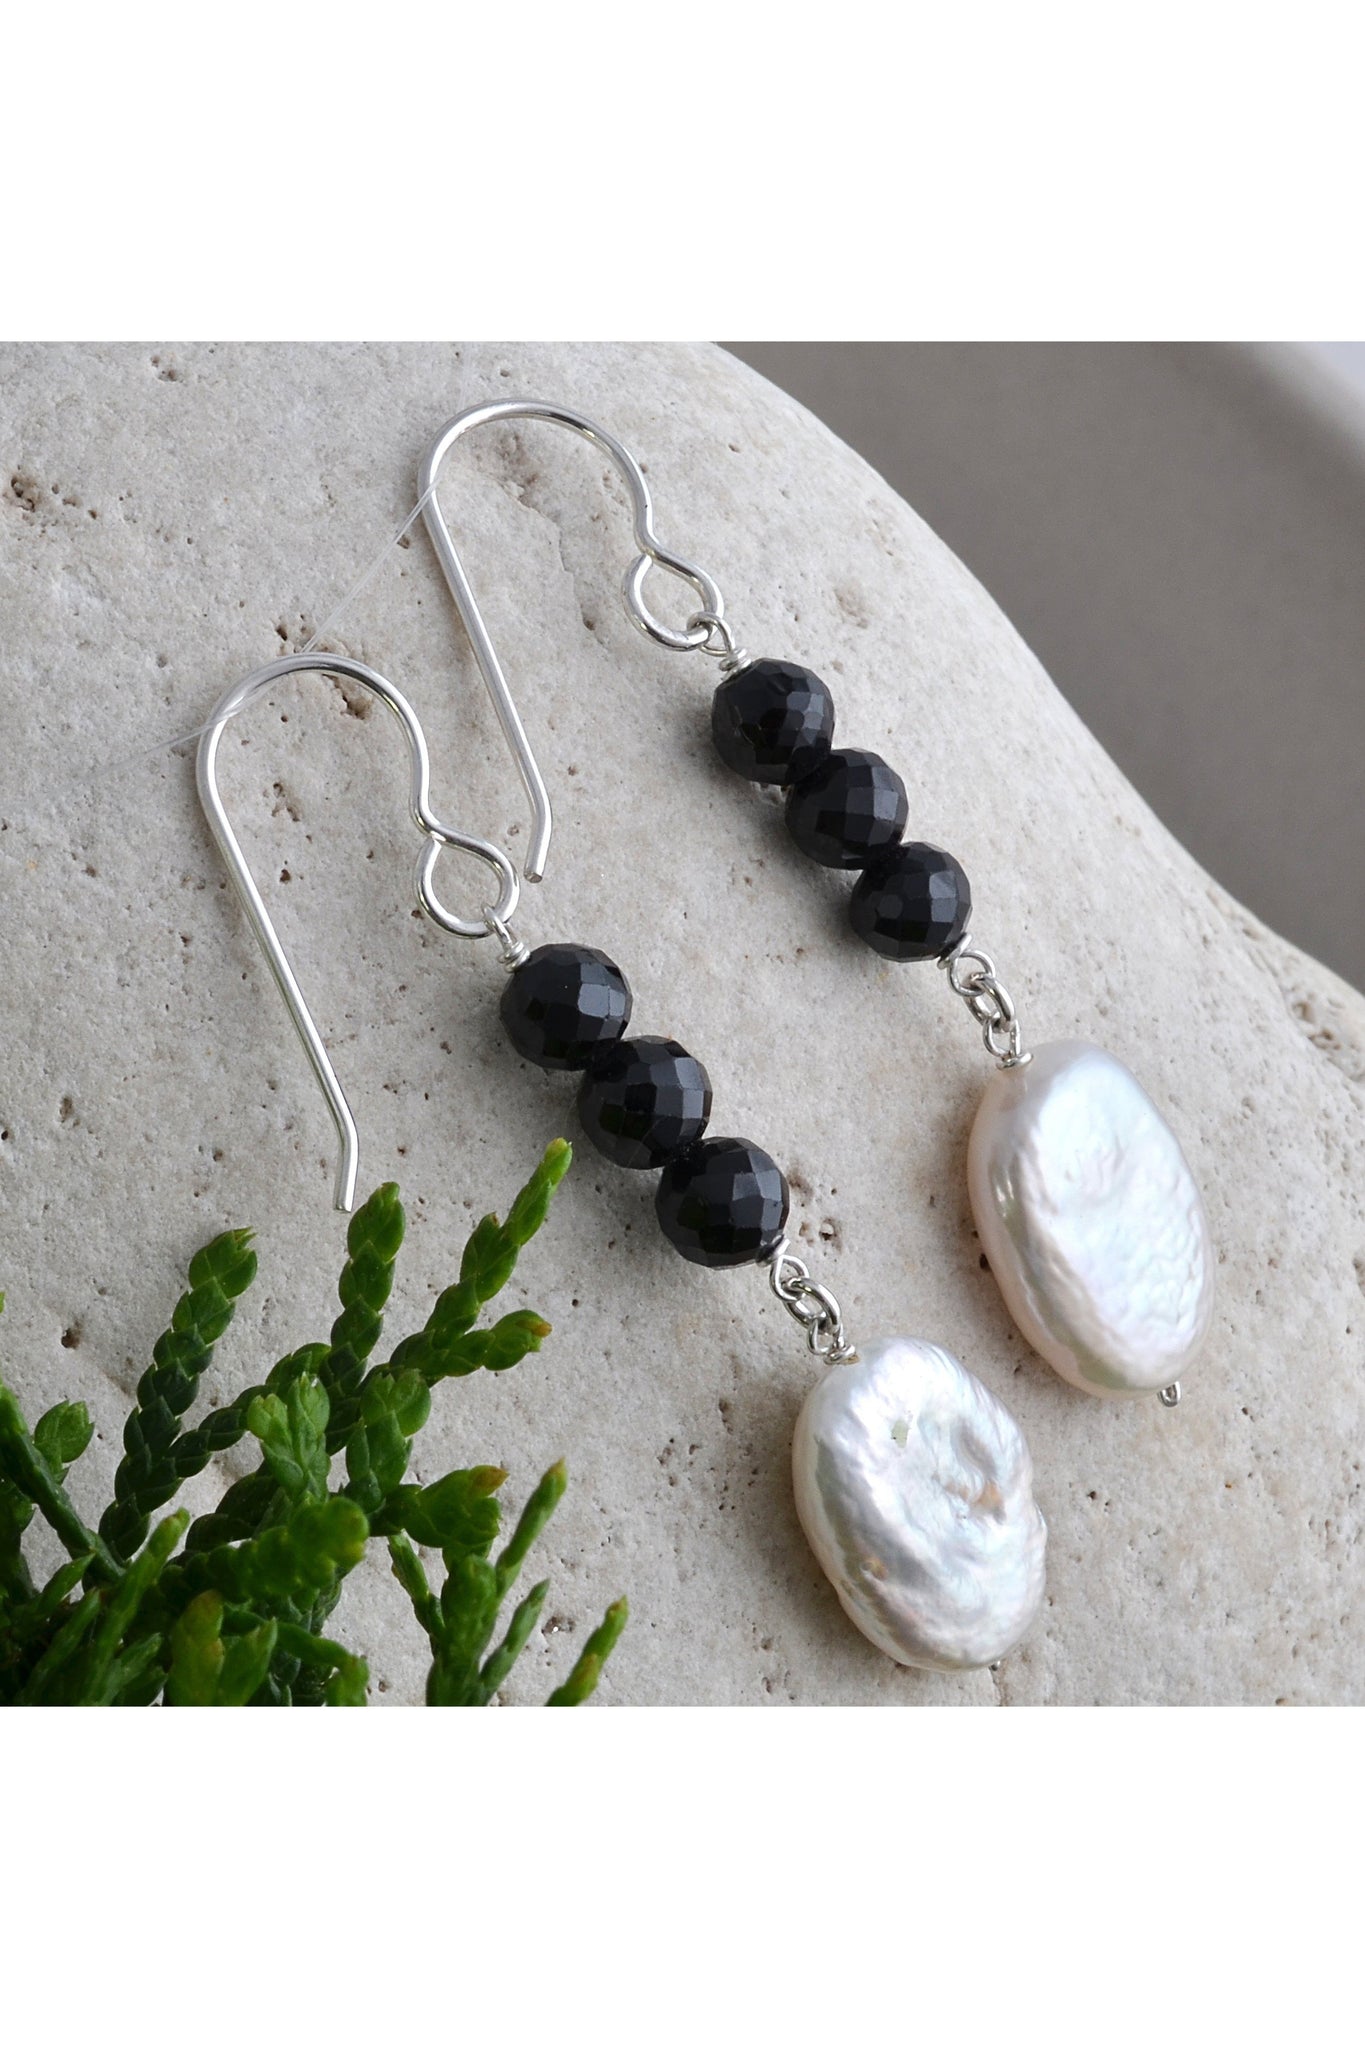 Black Onyx, White Pearl Dangle Earrings